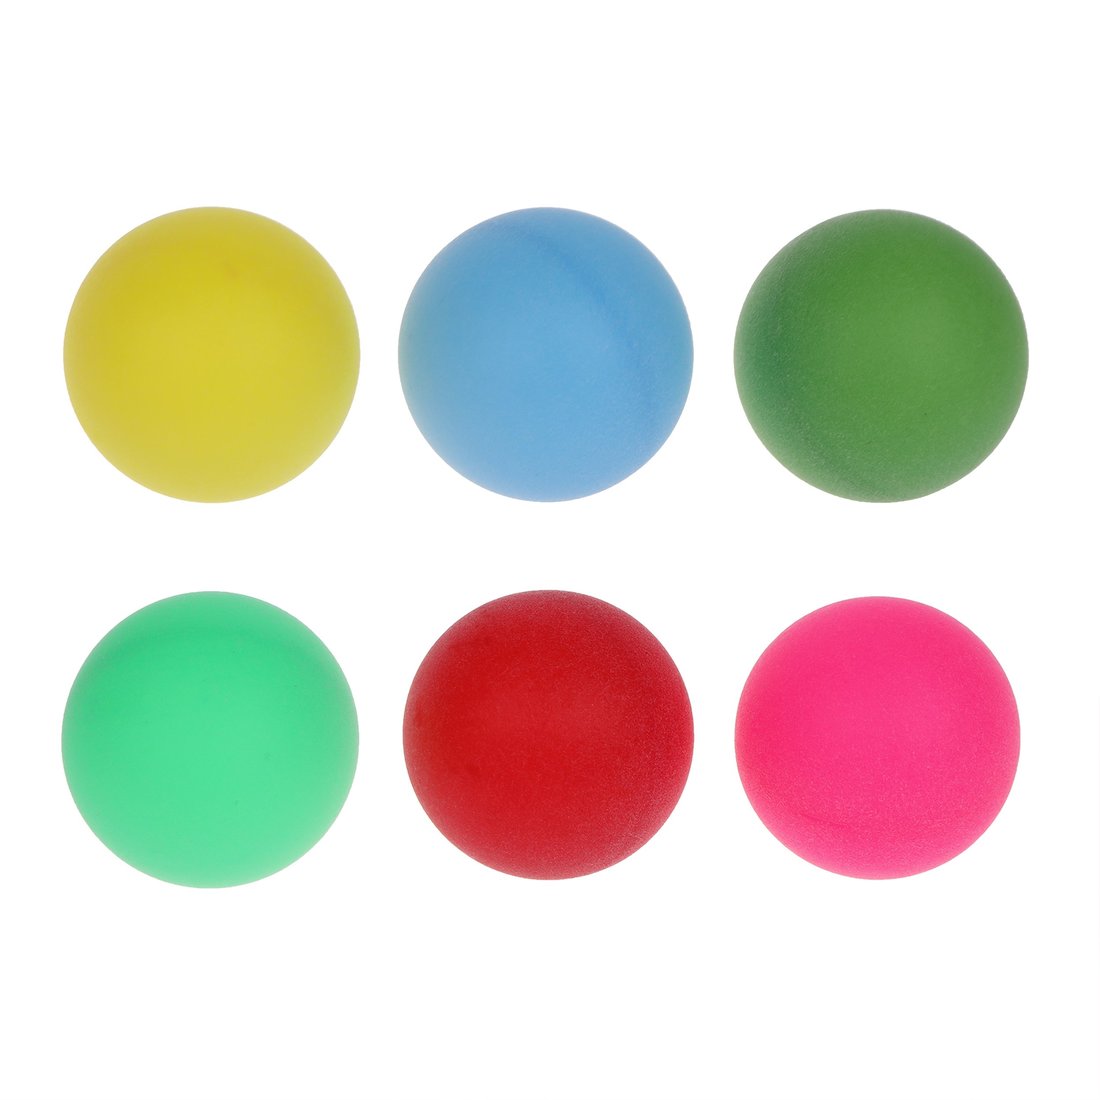 Шарики для настольного тенниса 636179 цветные в наборе 6шт в пакете - Пенза 